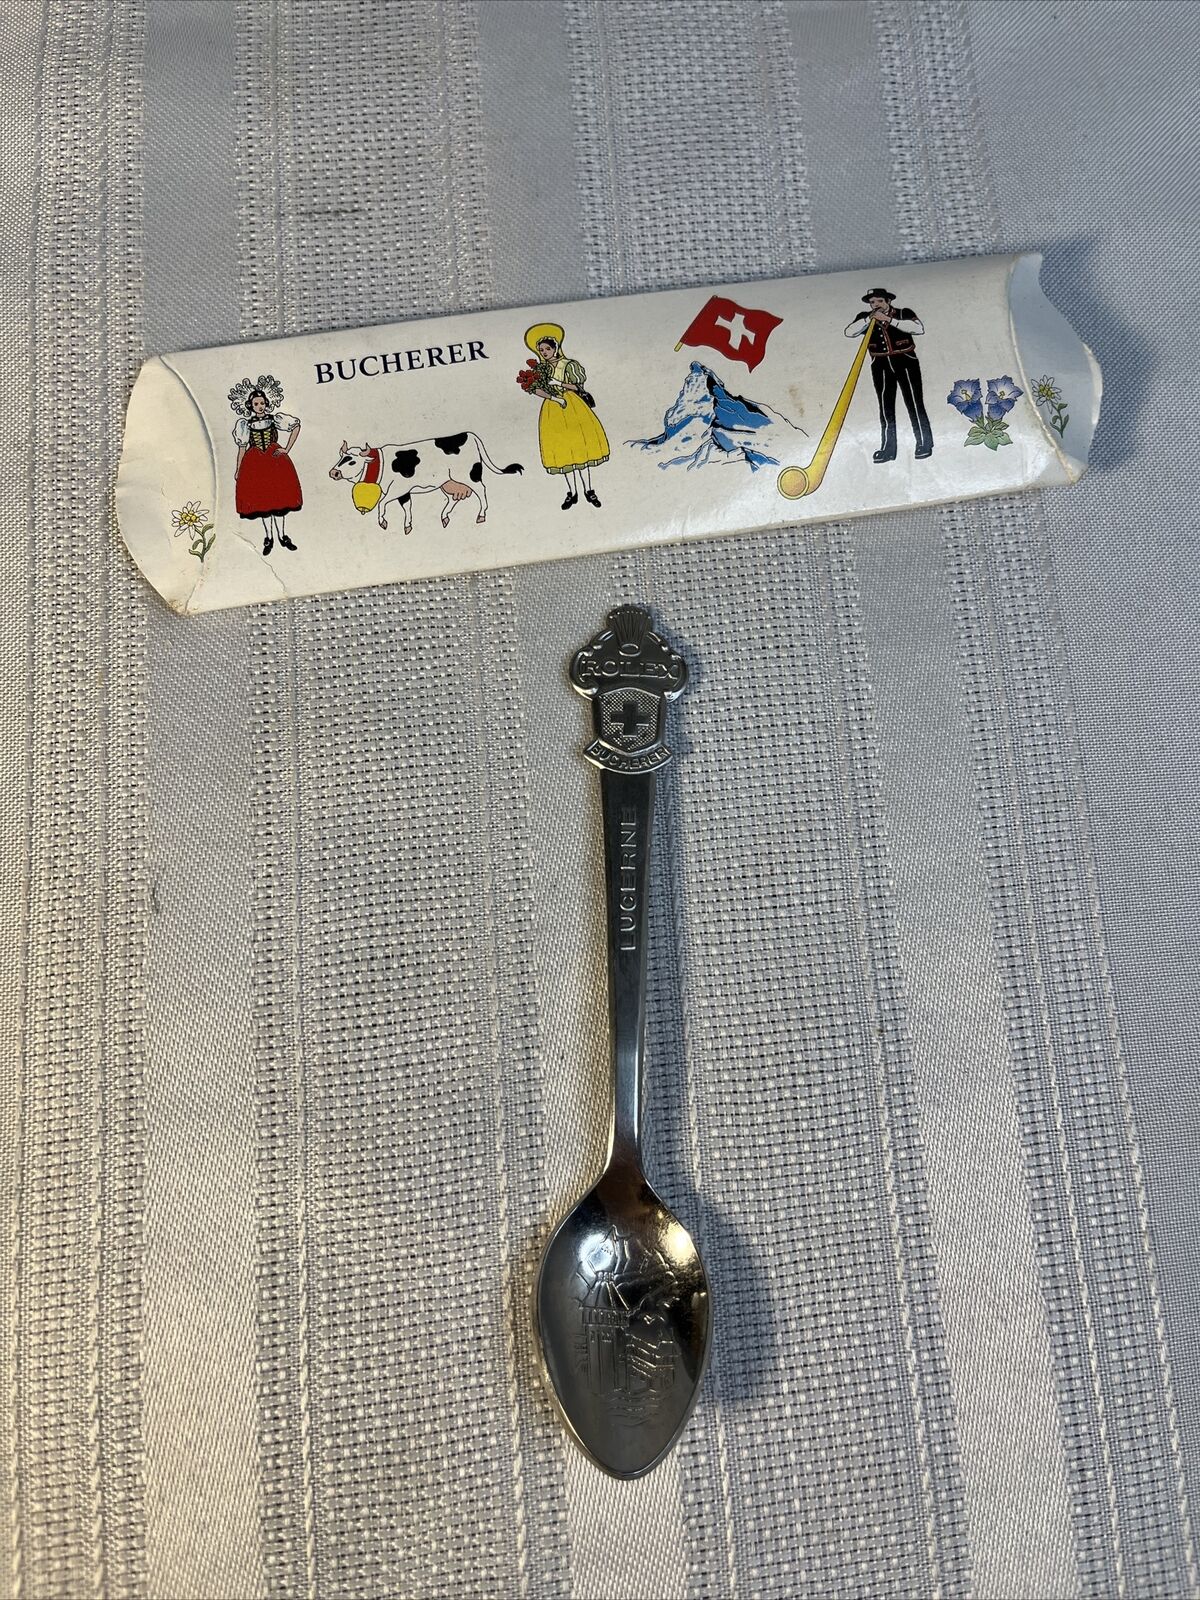 Rolex Lucerne Switzerland  Bucherer Spoon Original Box 🔥🔥🔥 Vintage EXCELLENT